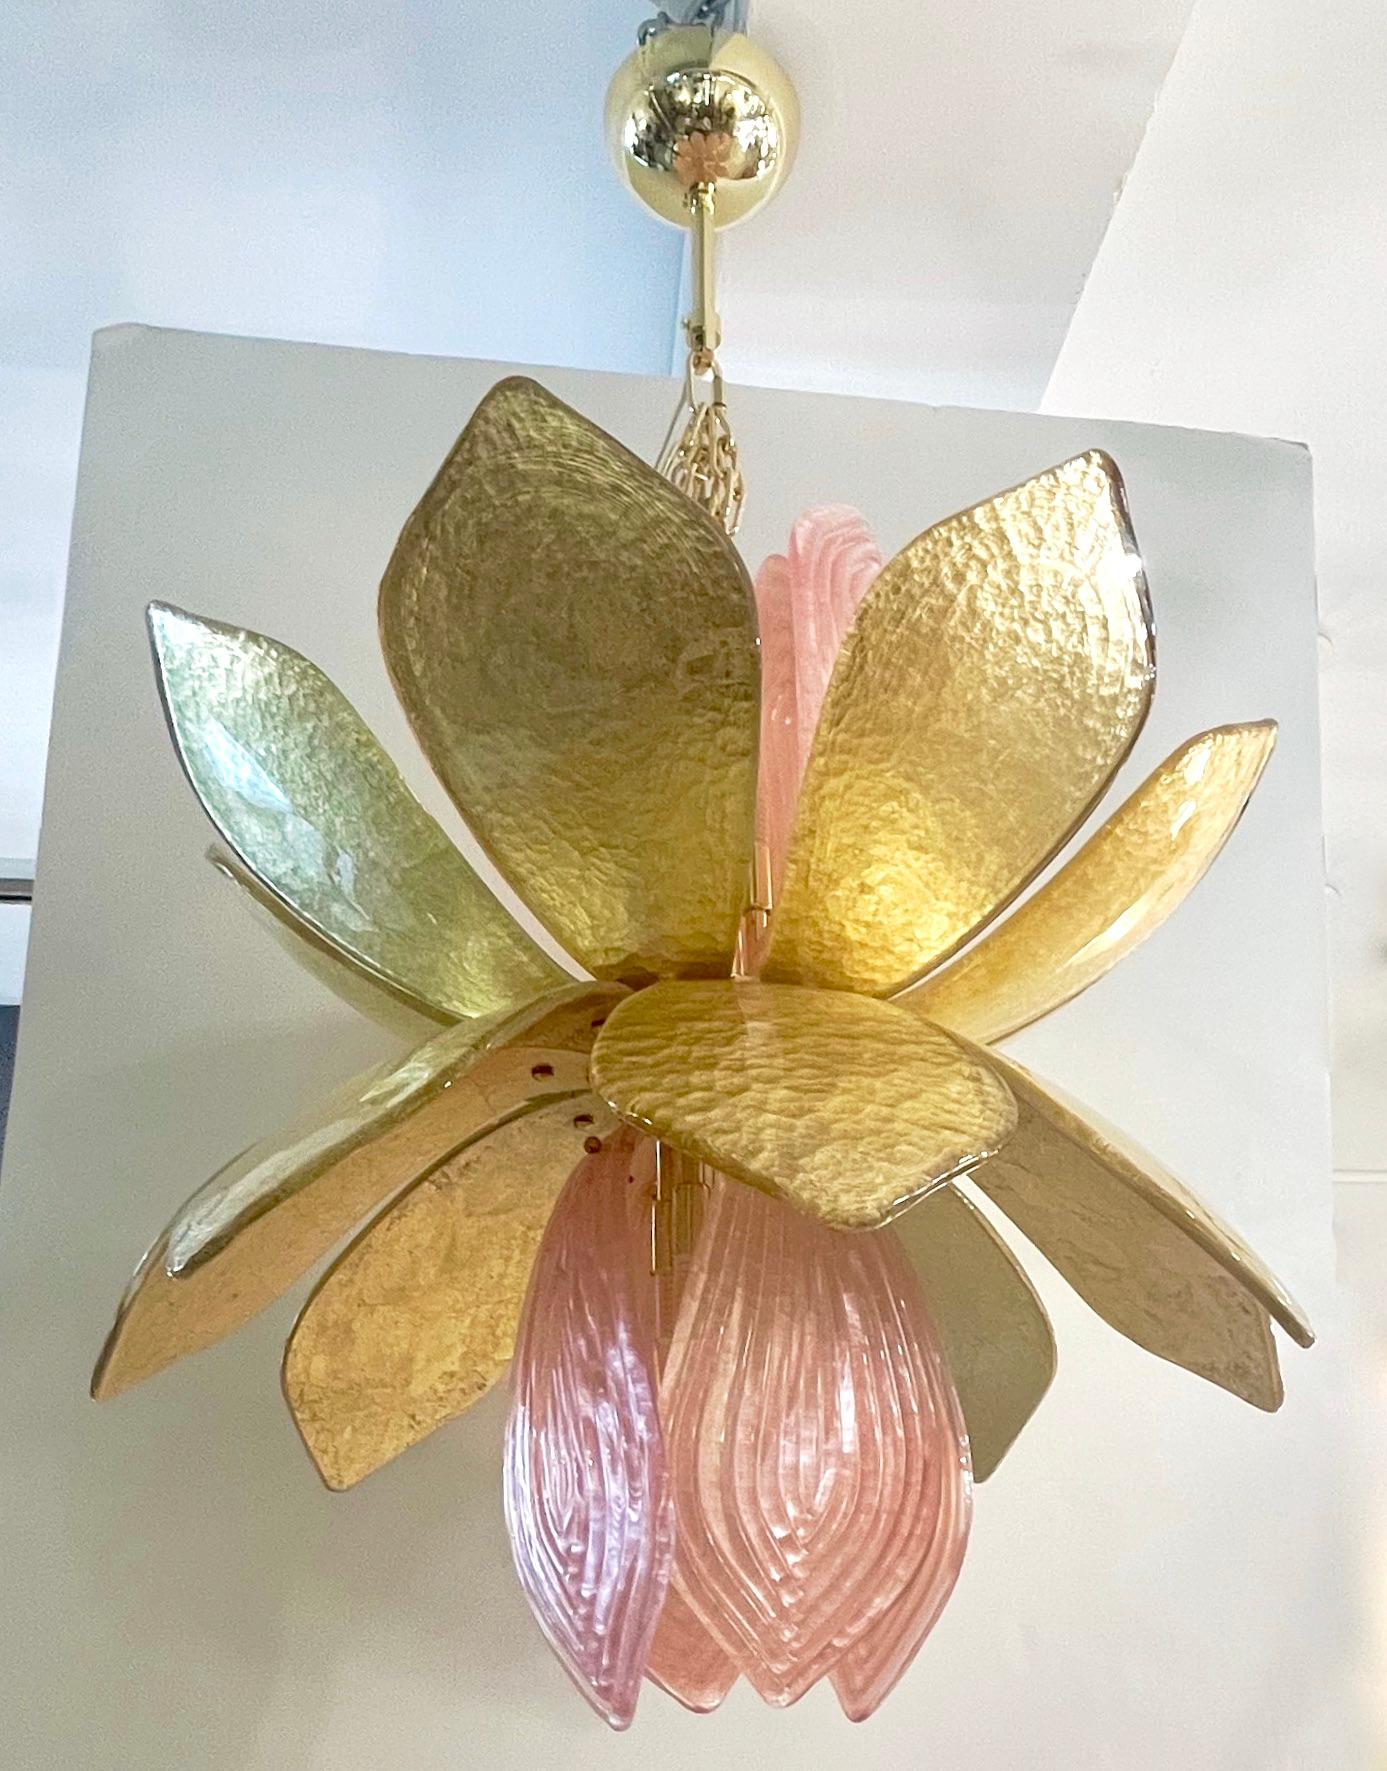 Il s'agit d'un design organique exclusif, entièrement réalisé à la main à Murano - Italie, en forme de fleur de lotus avec des feuilles en verre de Murano reed texturé rose givré sortant d'une corolle de feuilles en verre travaillées à la main avec